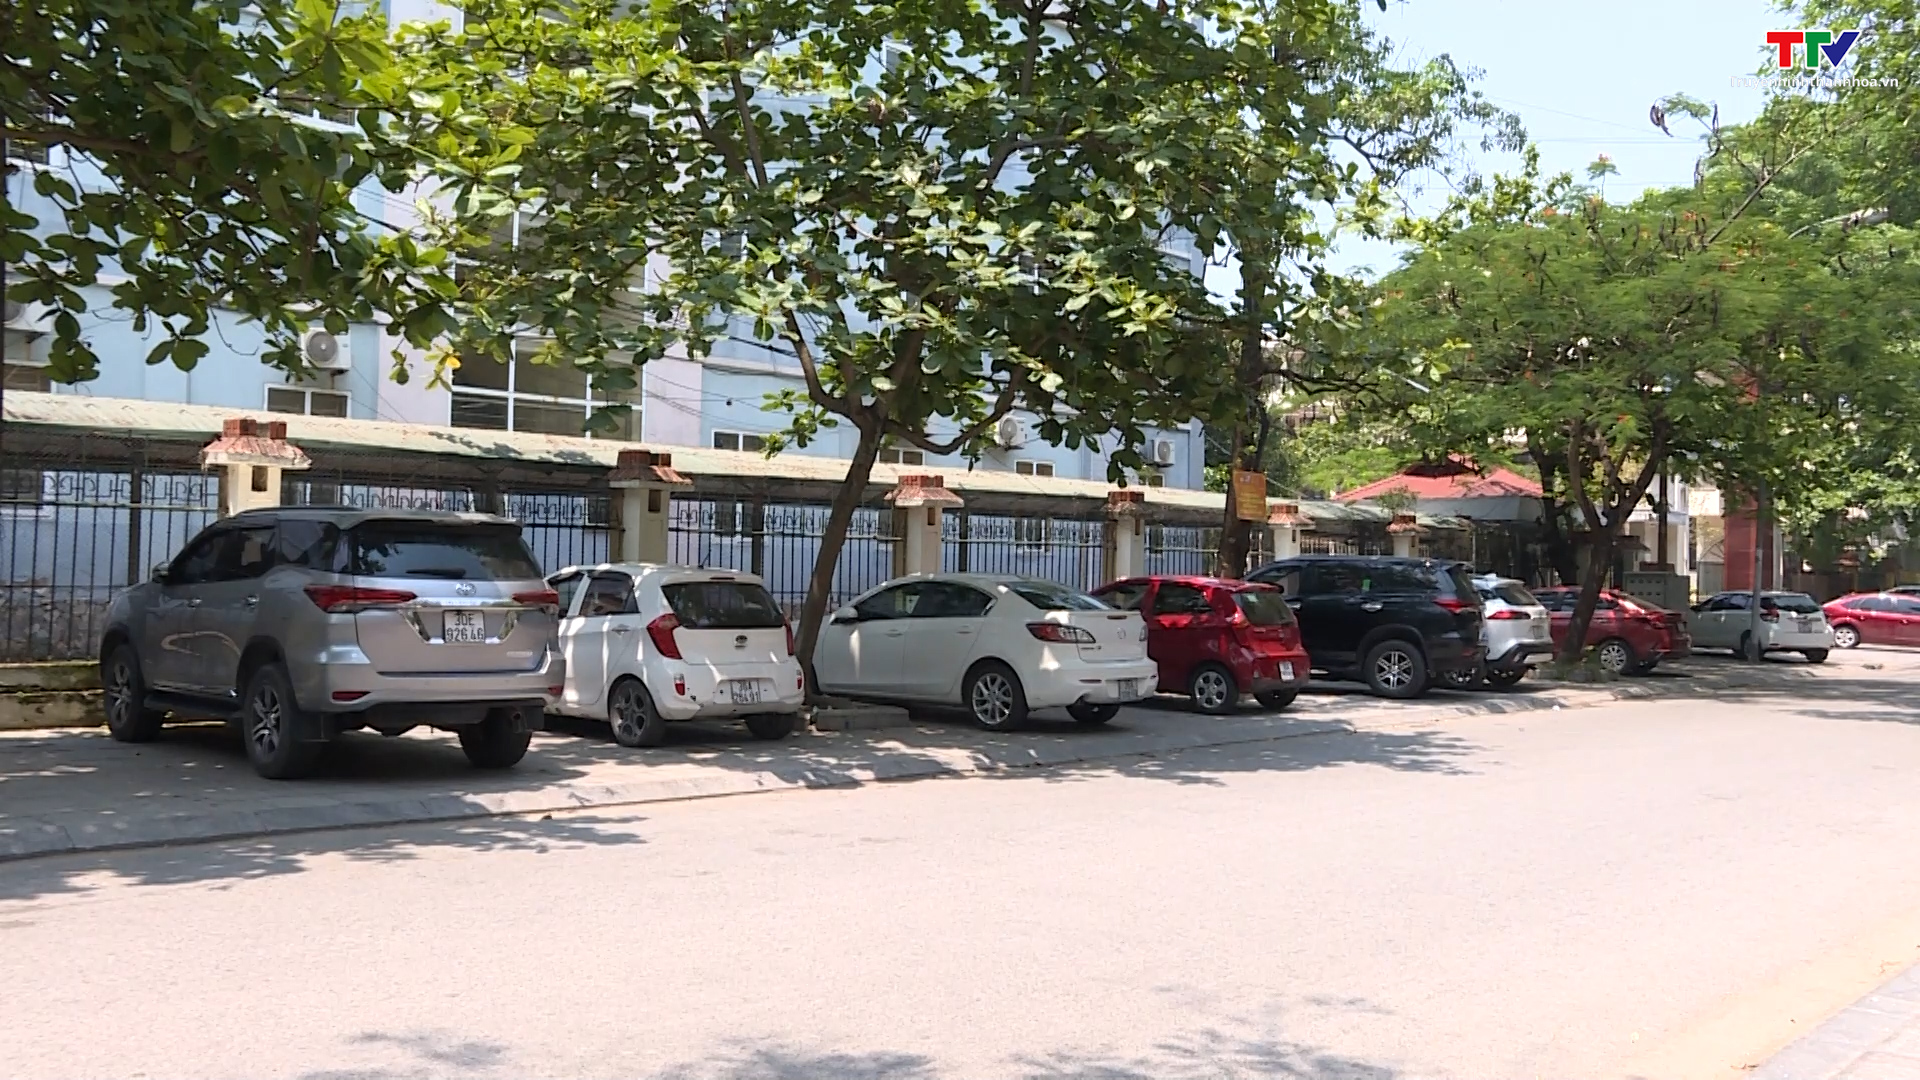 Cần có giải pháp chấn chỉnh tình trạng dừng, đỗ xe sai quy định tại thành phố Thanh Hoá  - Ảnh 4.